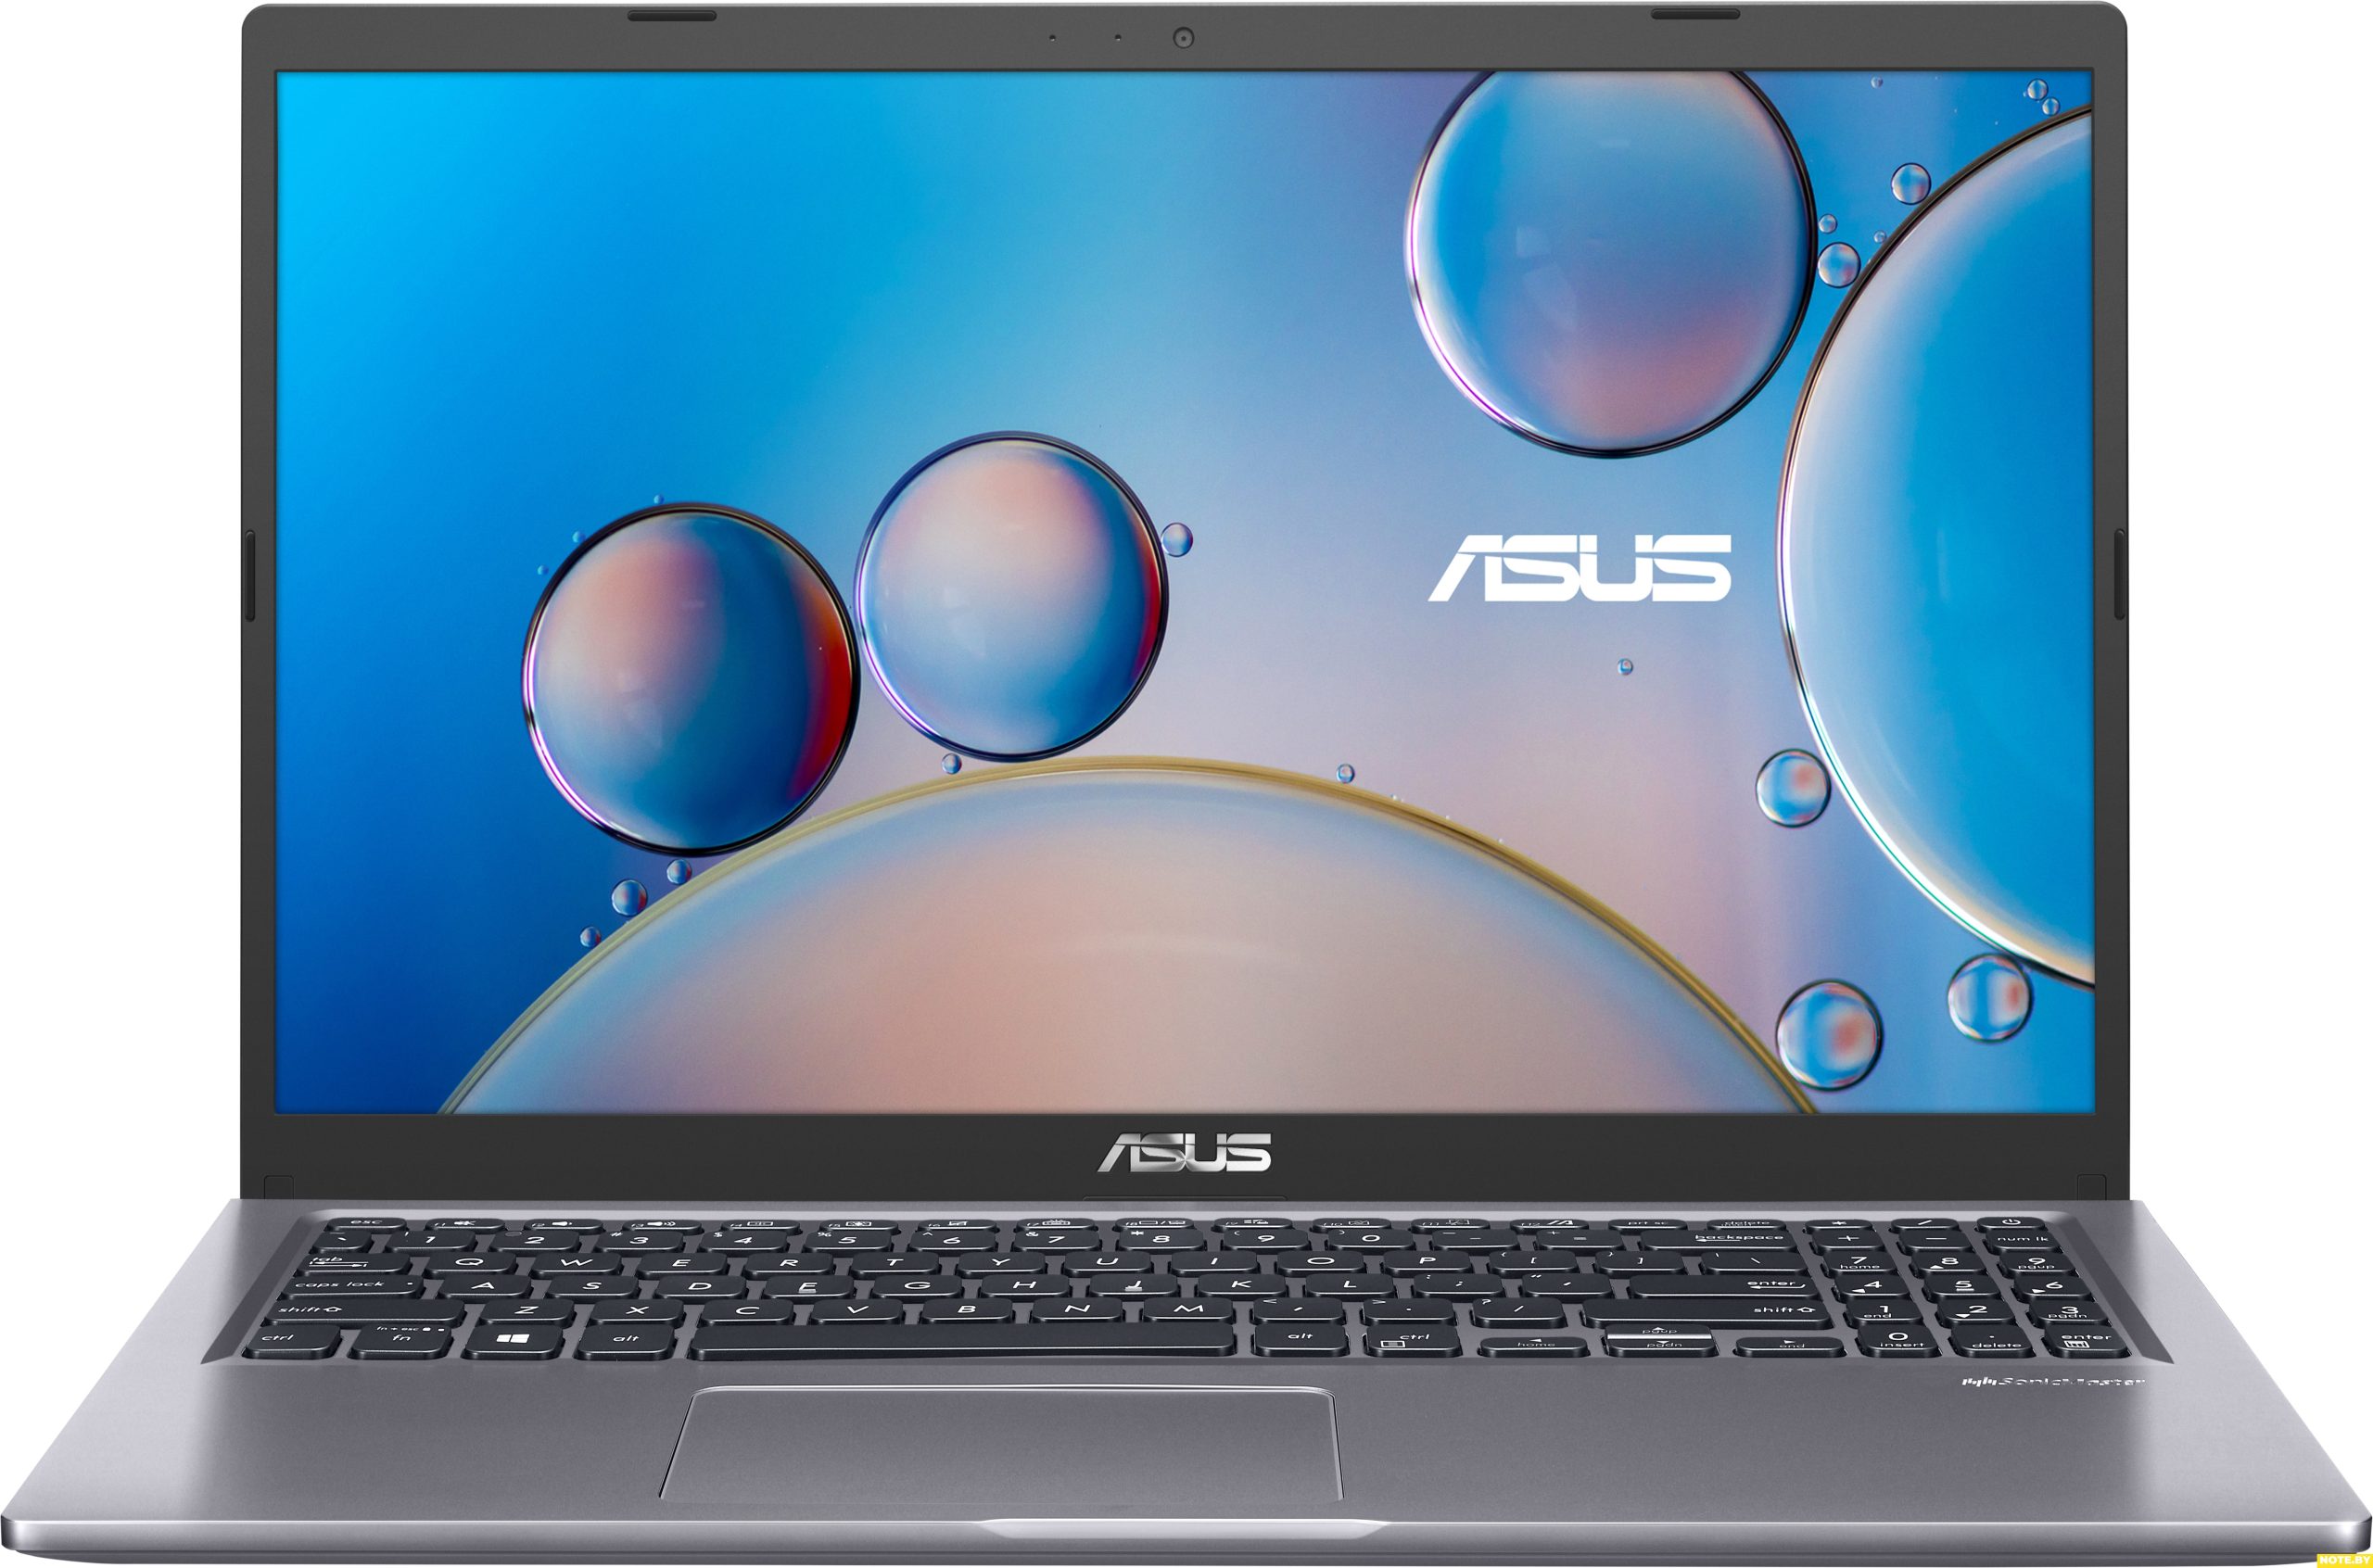 Ноутбук ASUS X515JA-BQ026T